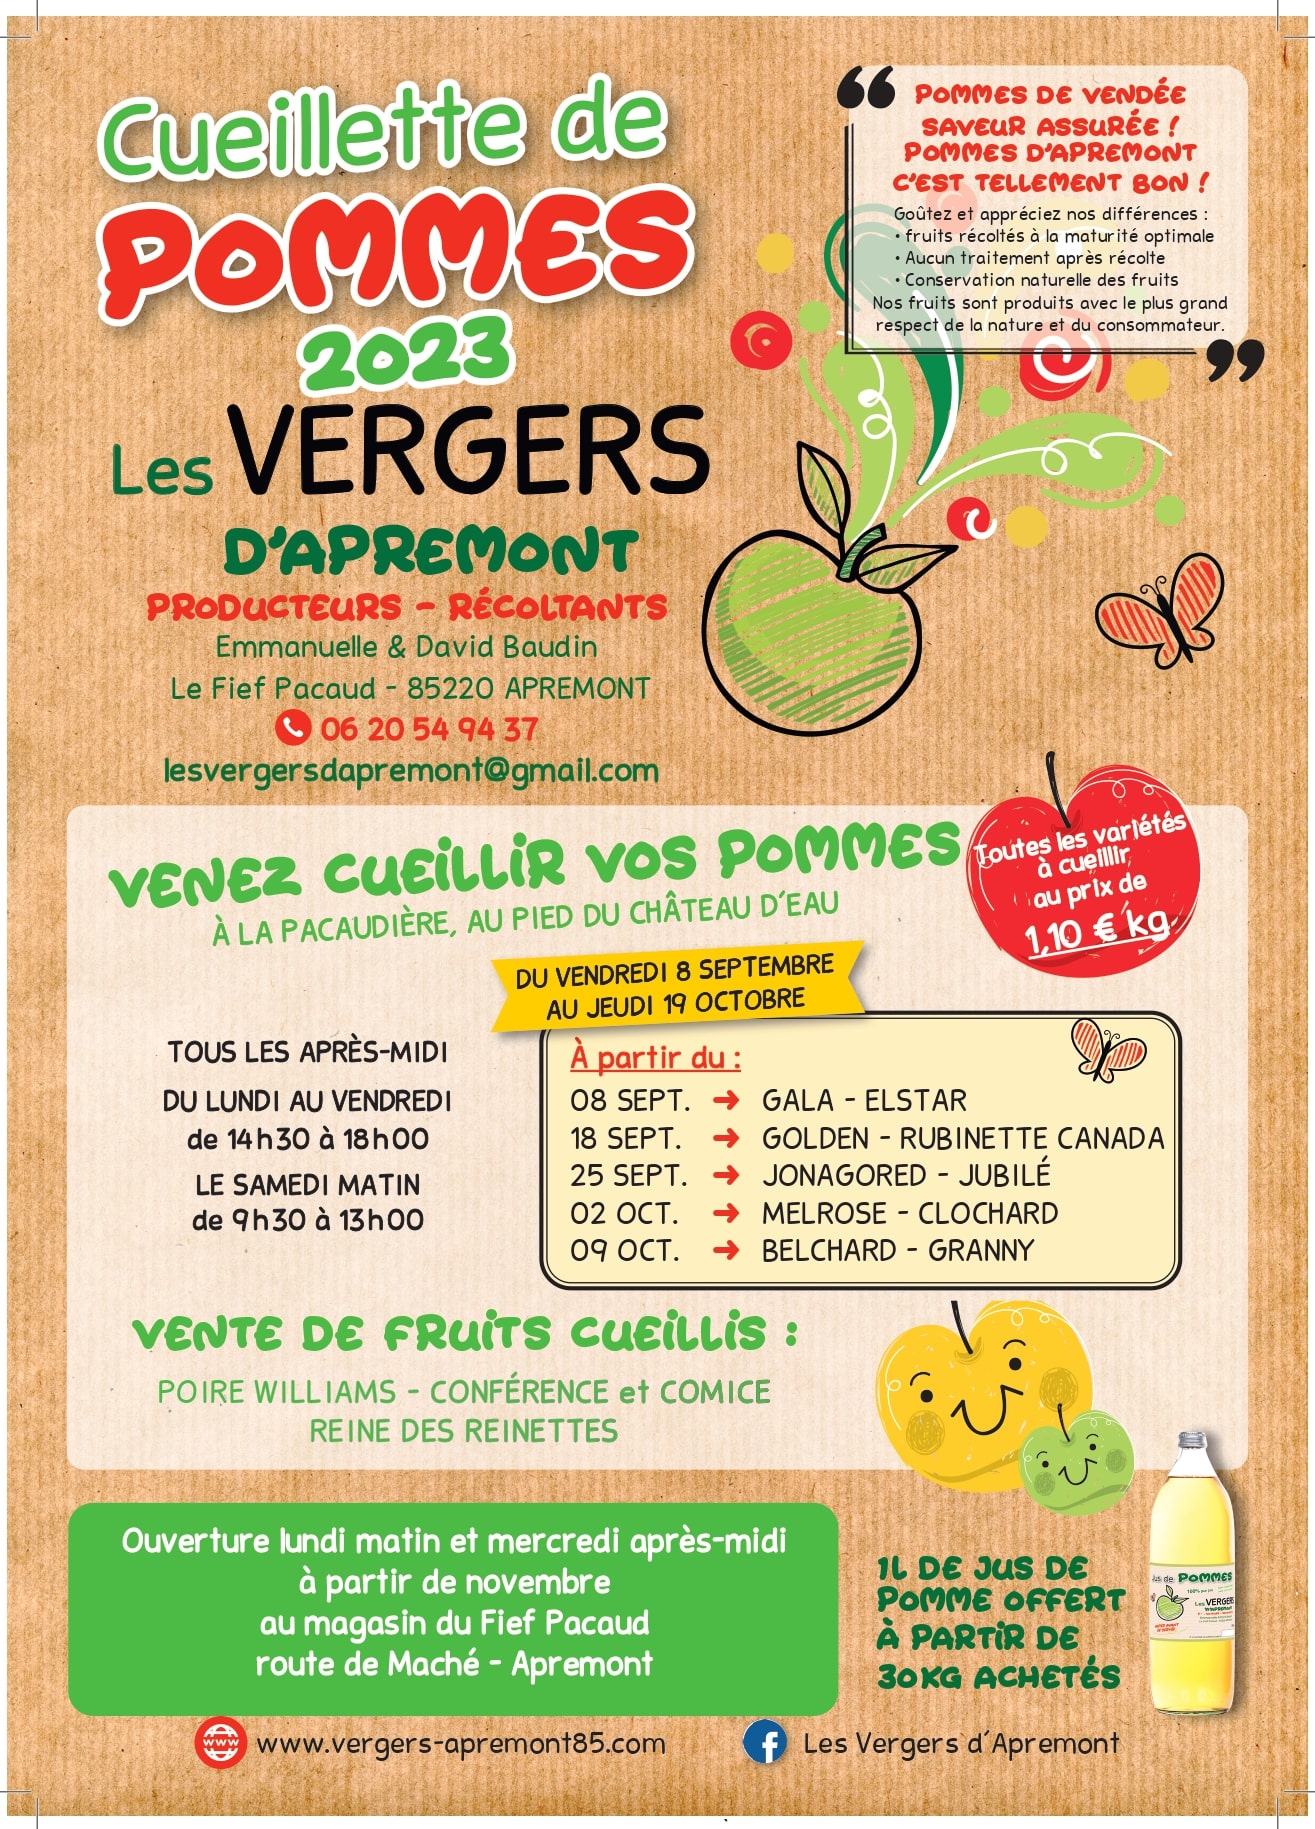 Calendrier-cueillette-pommes-2023-vergers-apremont